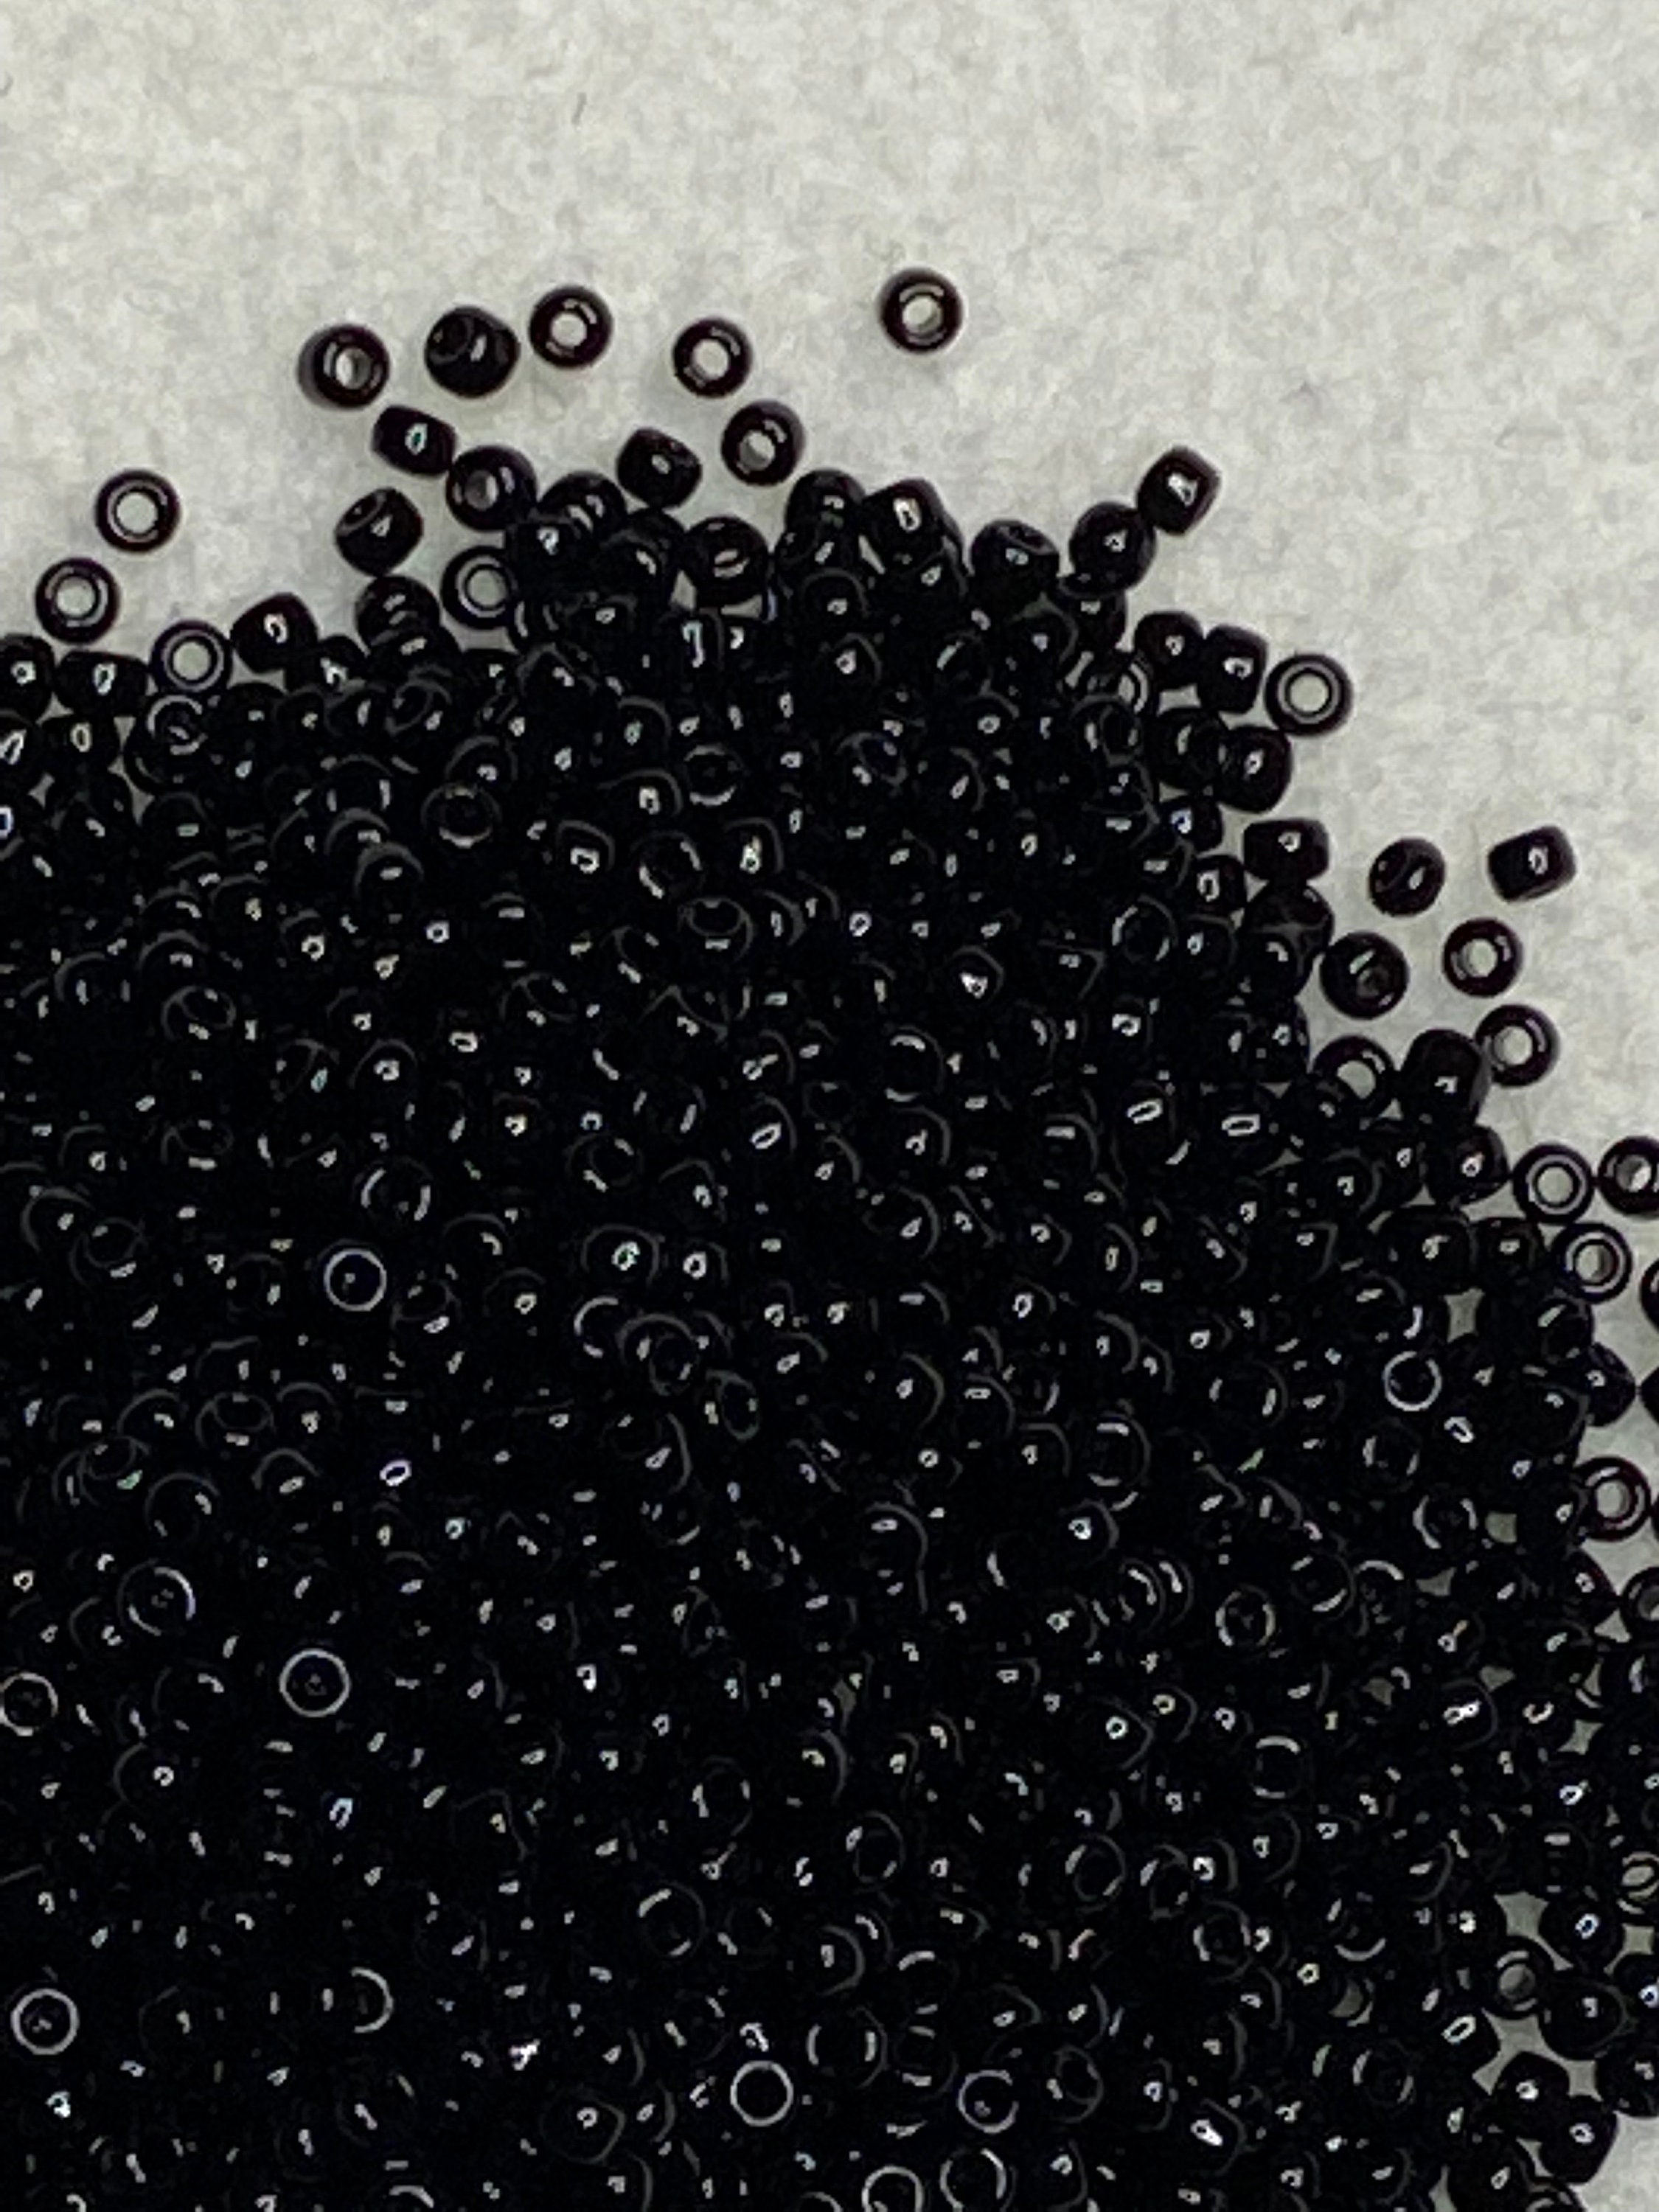 Shiny Black 11 Seed Beads, Size11 Toho Black Seed Beads, Glass Opaque Seed  Beads, Japanese Black Seed Bead, Glass Bead for Jewelry 